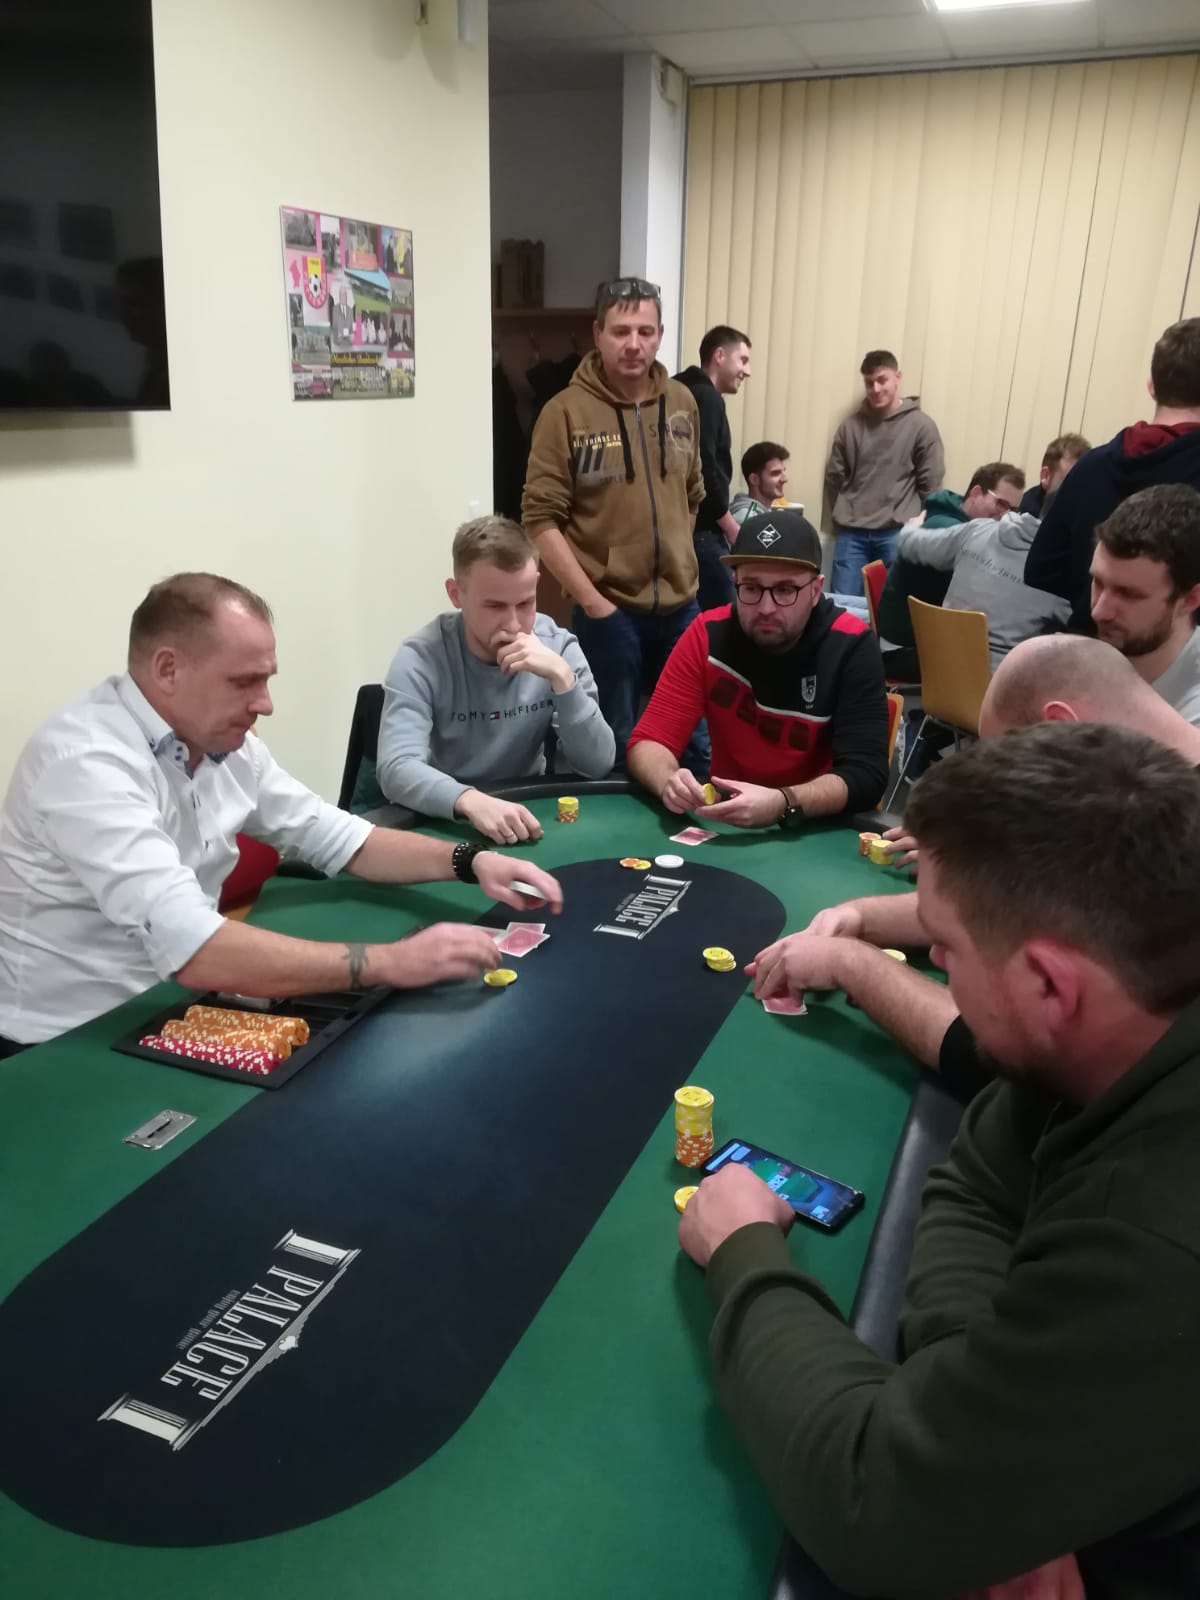 Pokerturnier im Klubheim